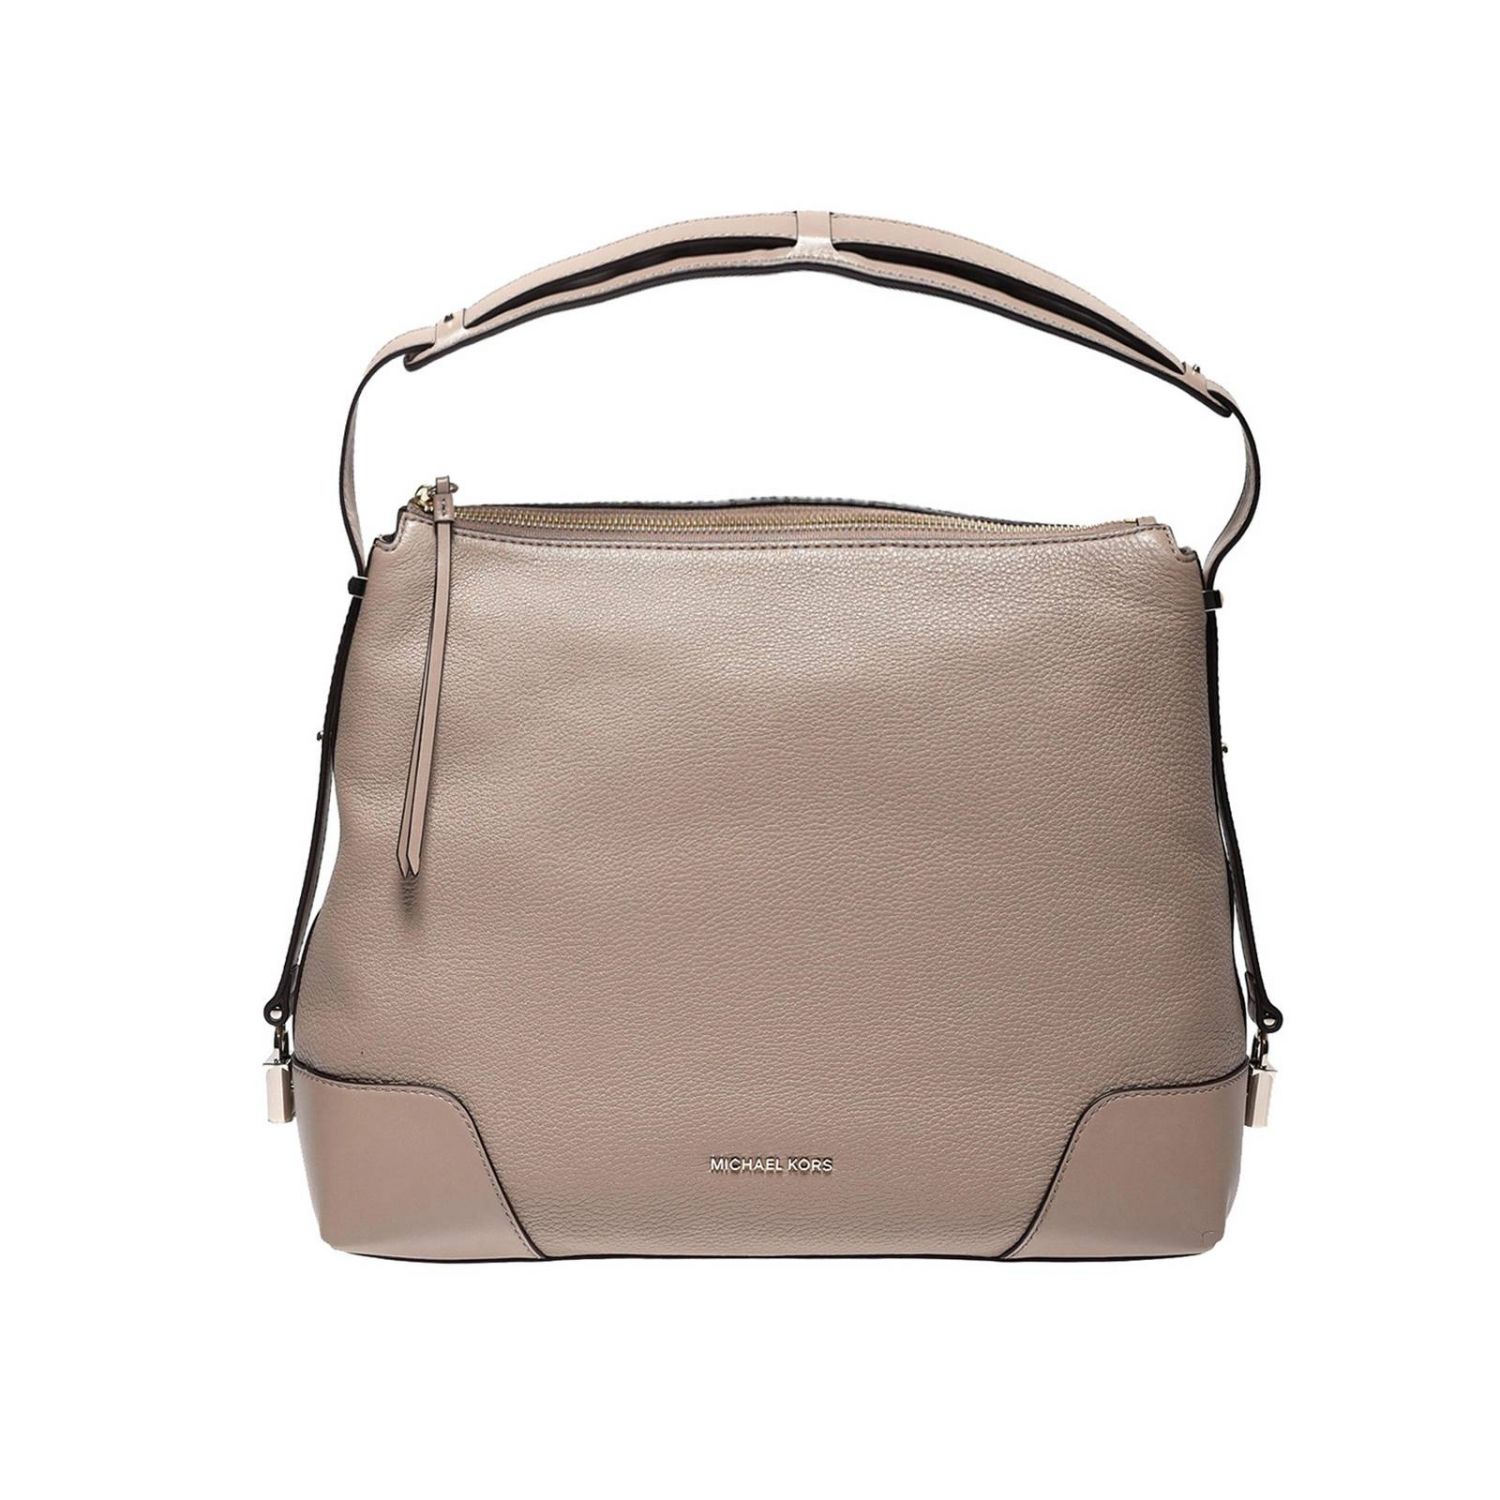 MICHAEL KORS: handbag for woman - Dove Grey